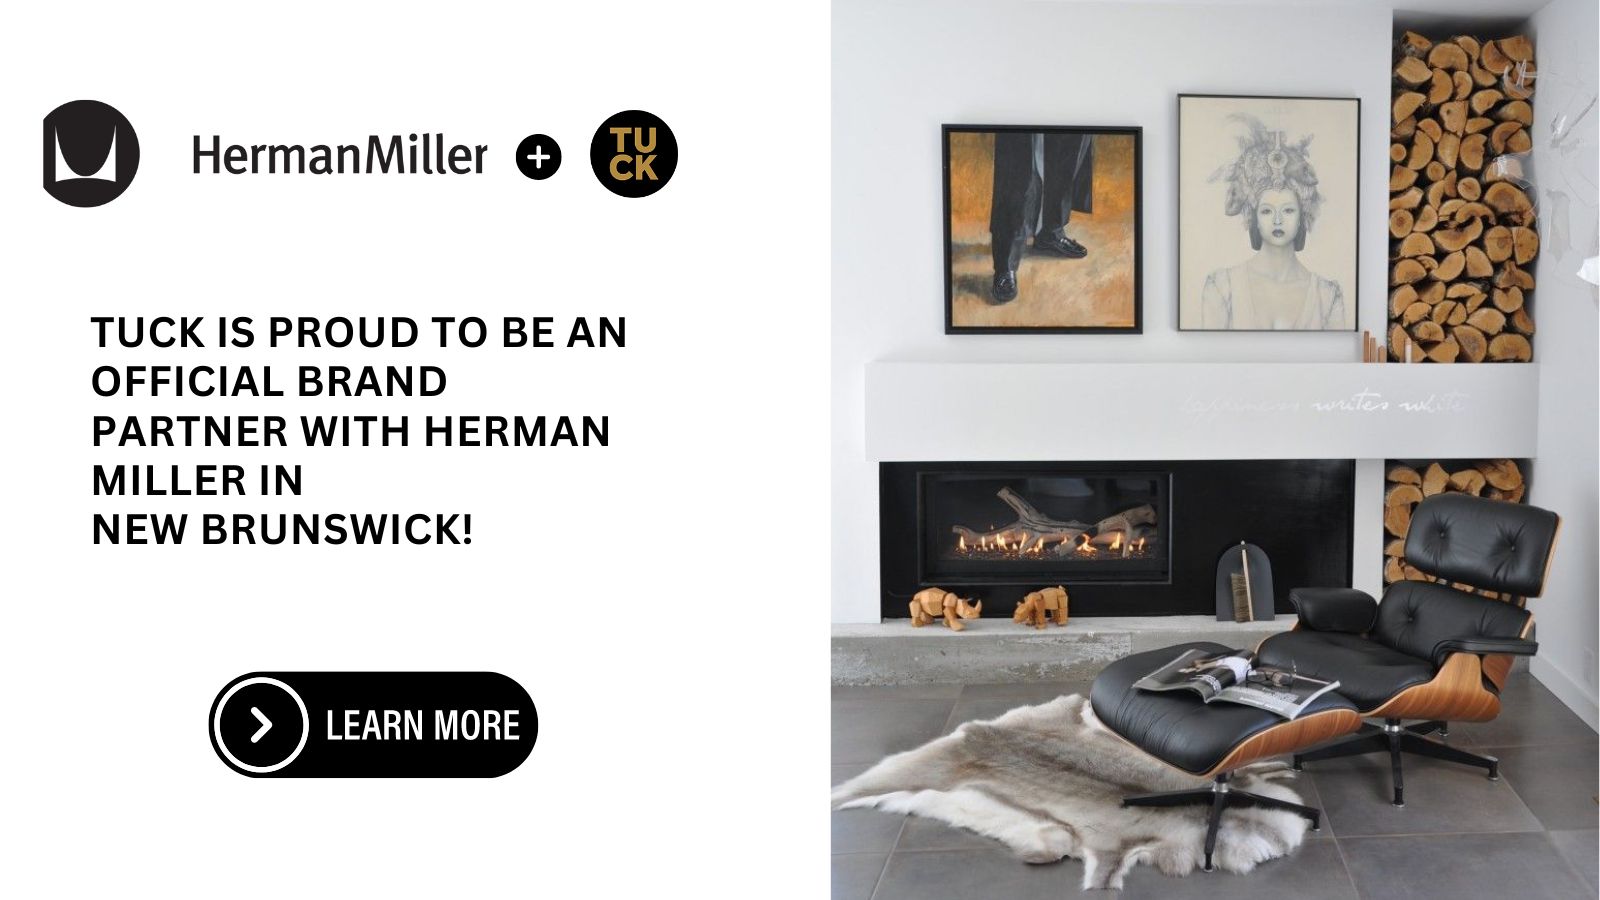 Tuck is proud to represent HermanMiller!